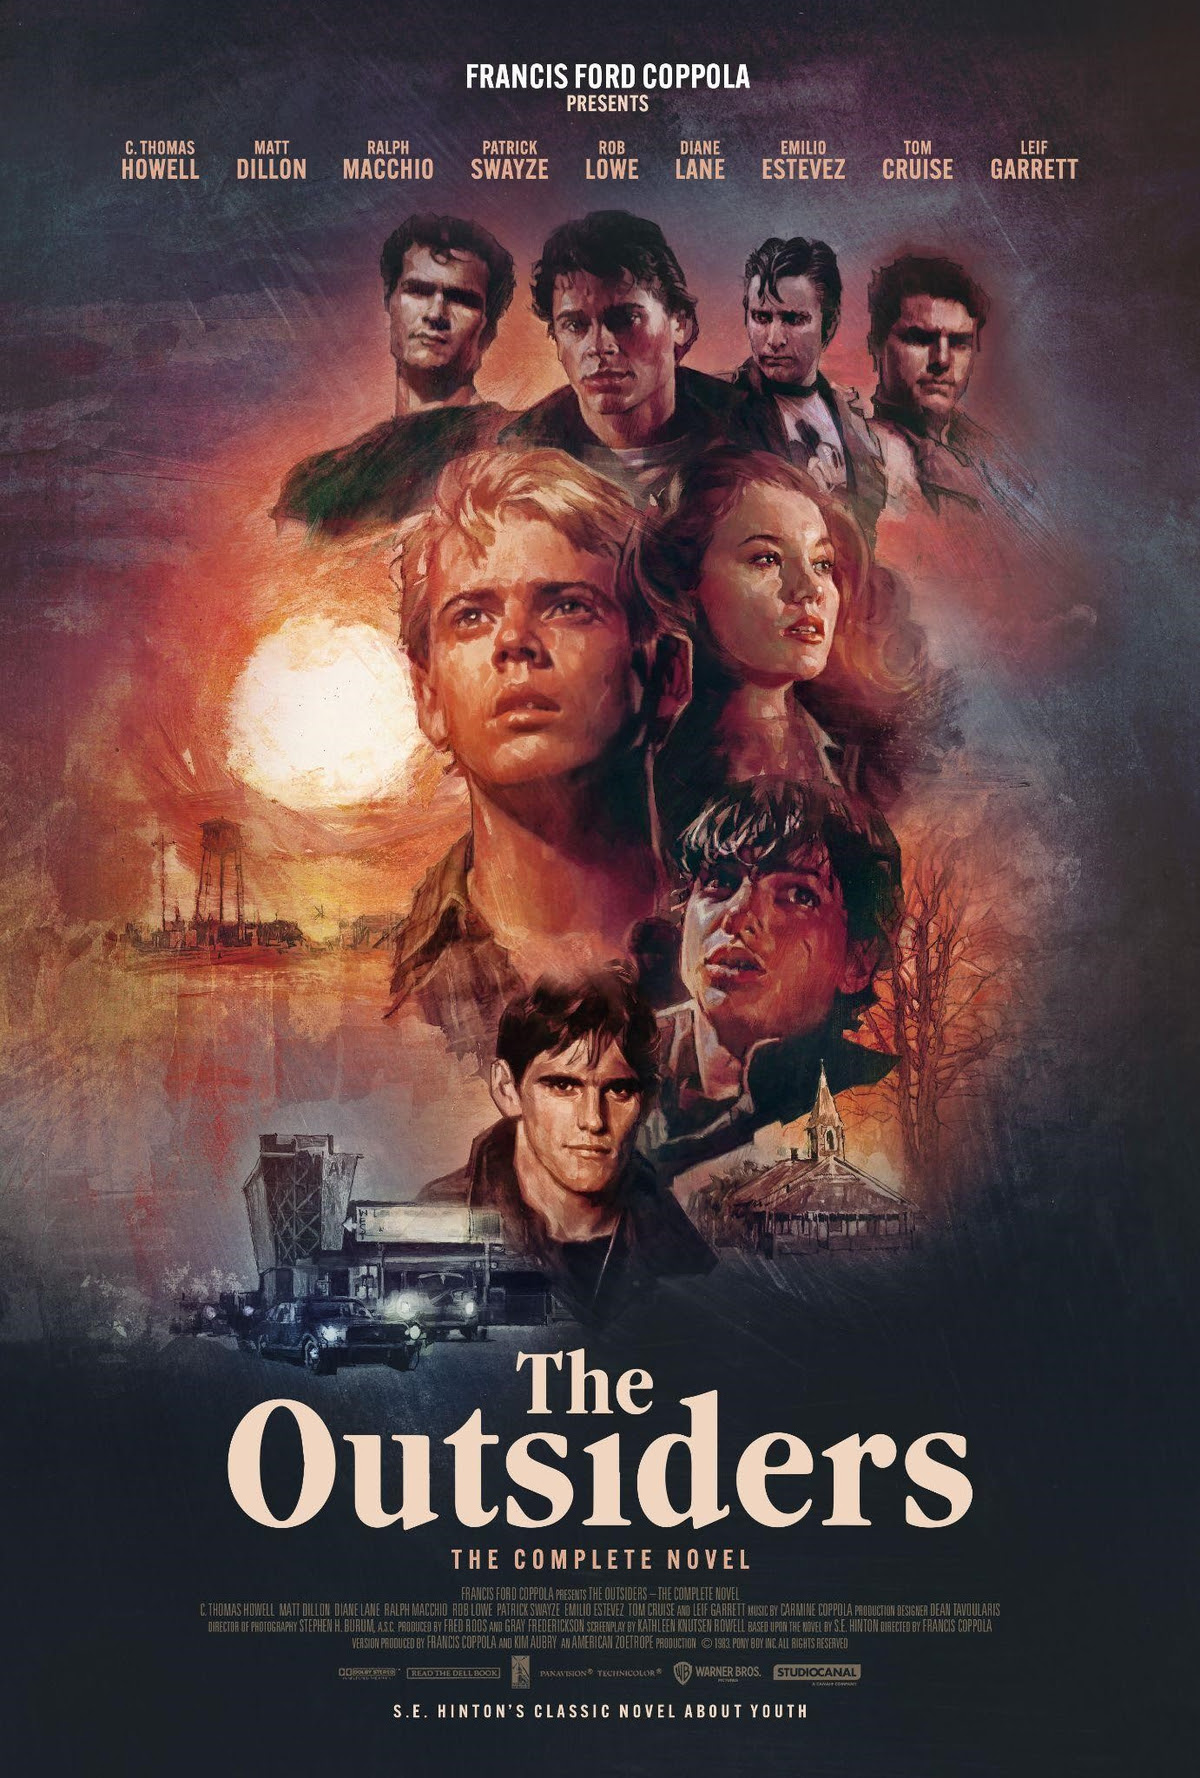 Film Kritik: „The Outsiders“- 4k ist den Kinobesuch am 02. November wert